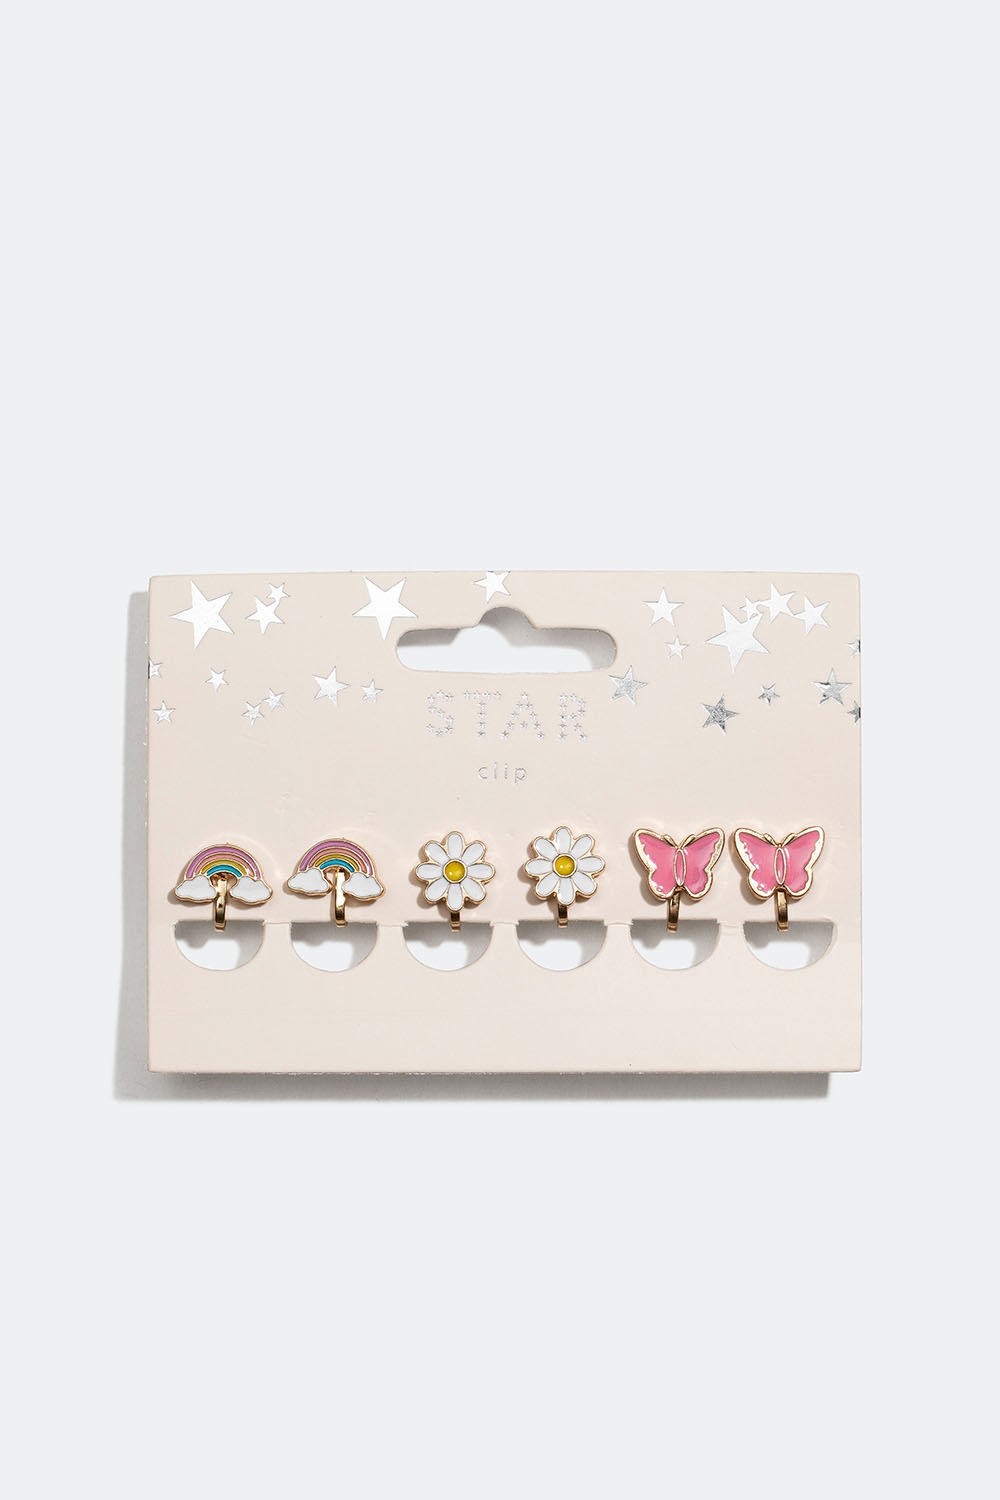 Clipsörhängen med regnbågar, blommor och fjärilar, 3-pack i gruppen Barn / Barnsmycken / Barnörhängen hos Glitter (402000029900)